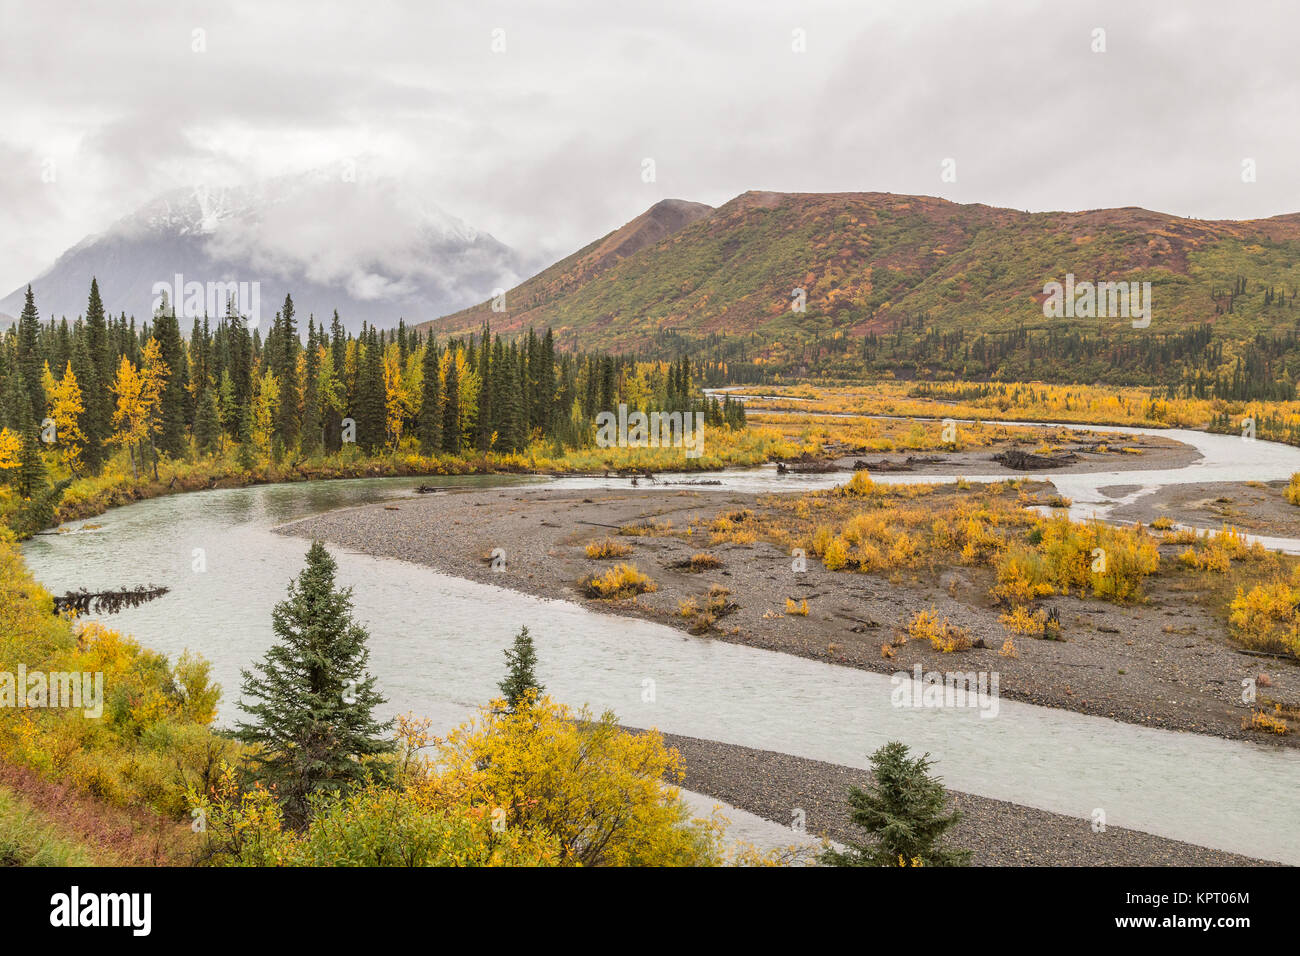 Vue depuis le MacKinley Explorer train sur l'Alaska Railroad près de Denali National Park prises à l'automne (automne) montrant la toundra et la taïga en couleurs d'automne Banque D'Images